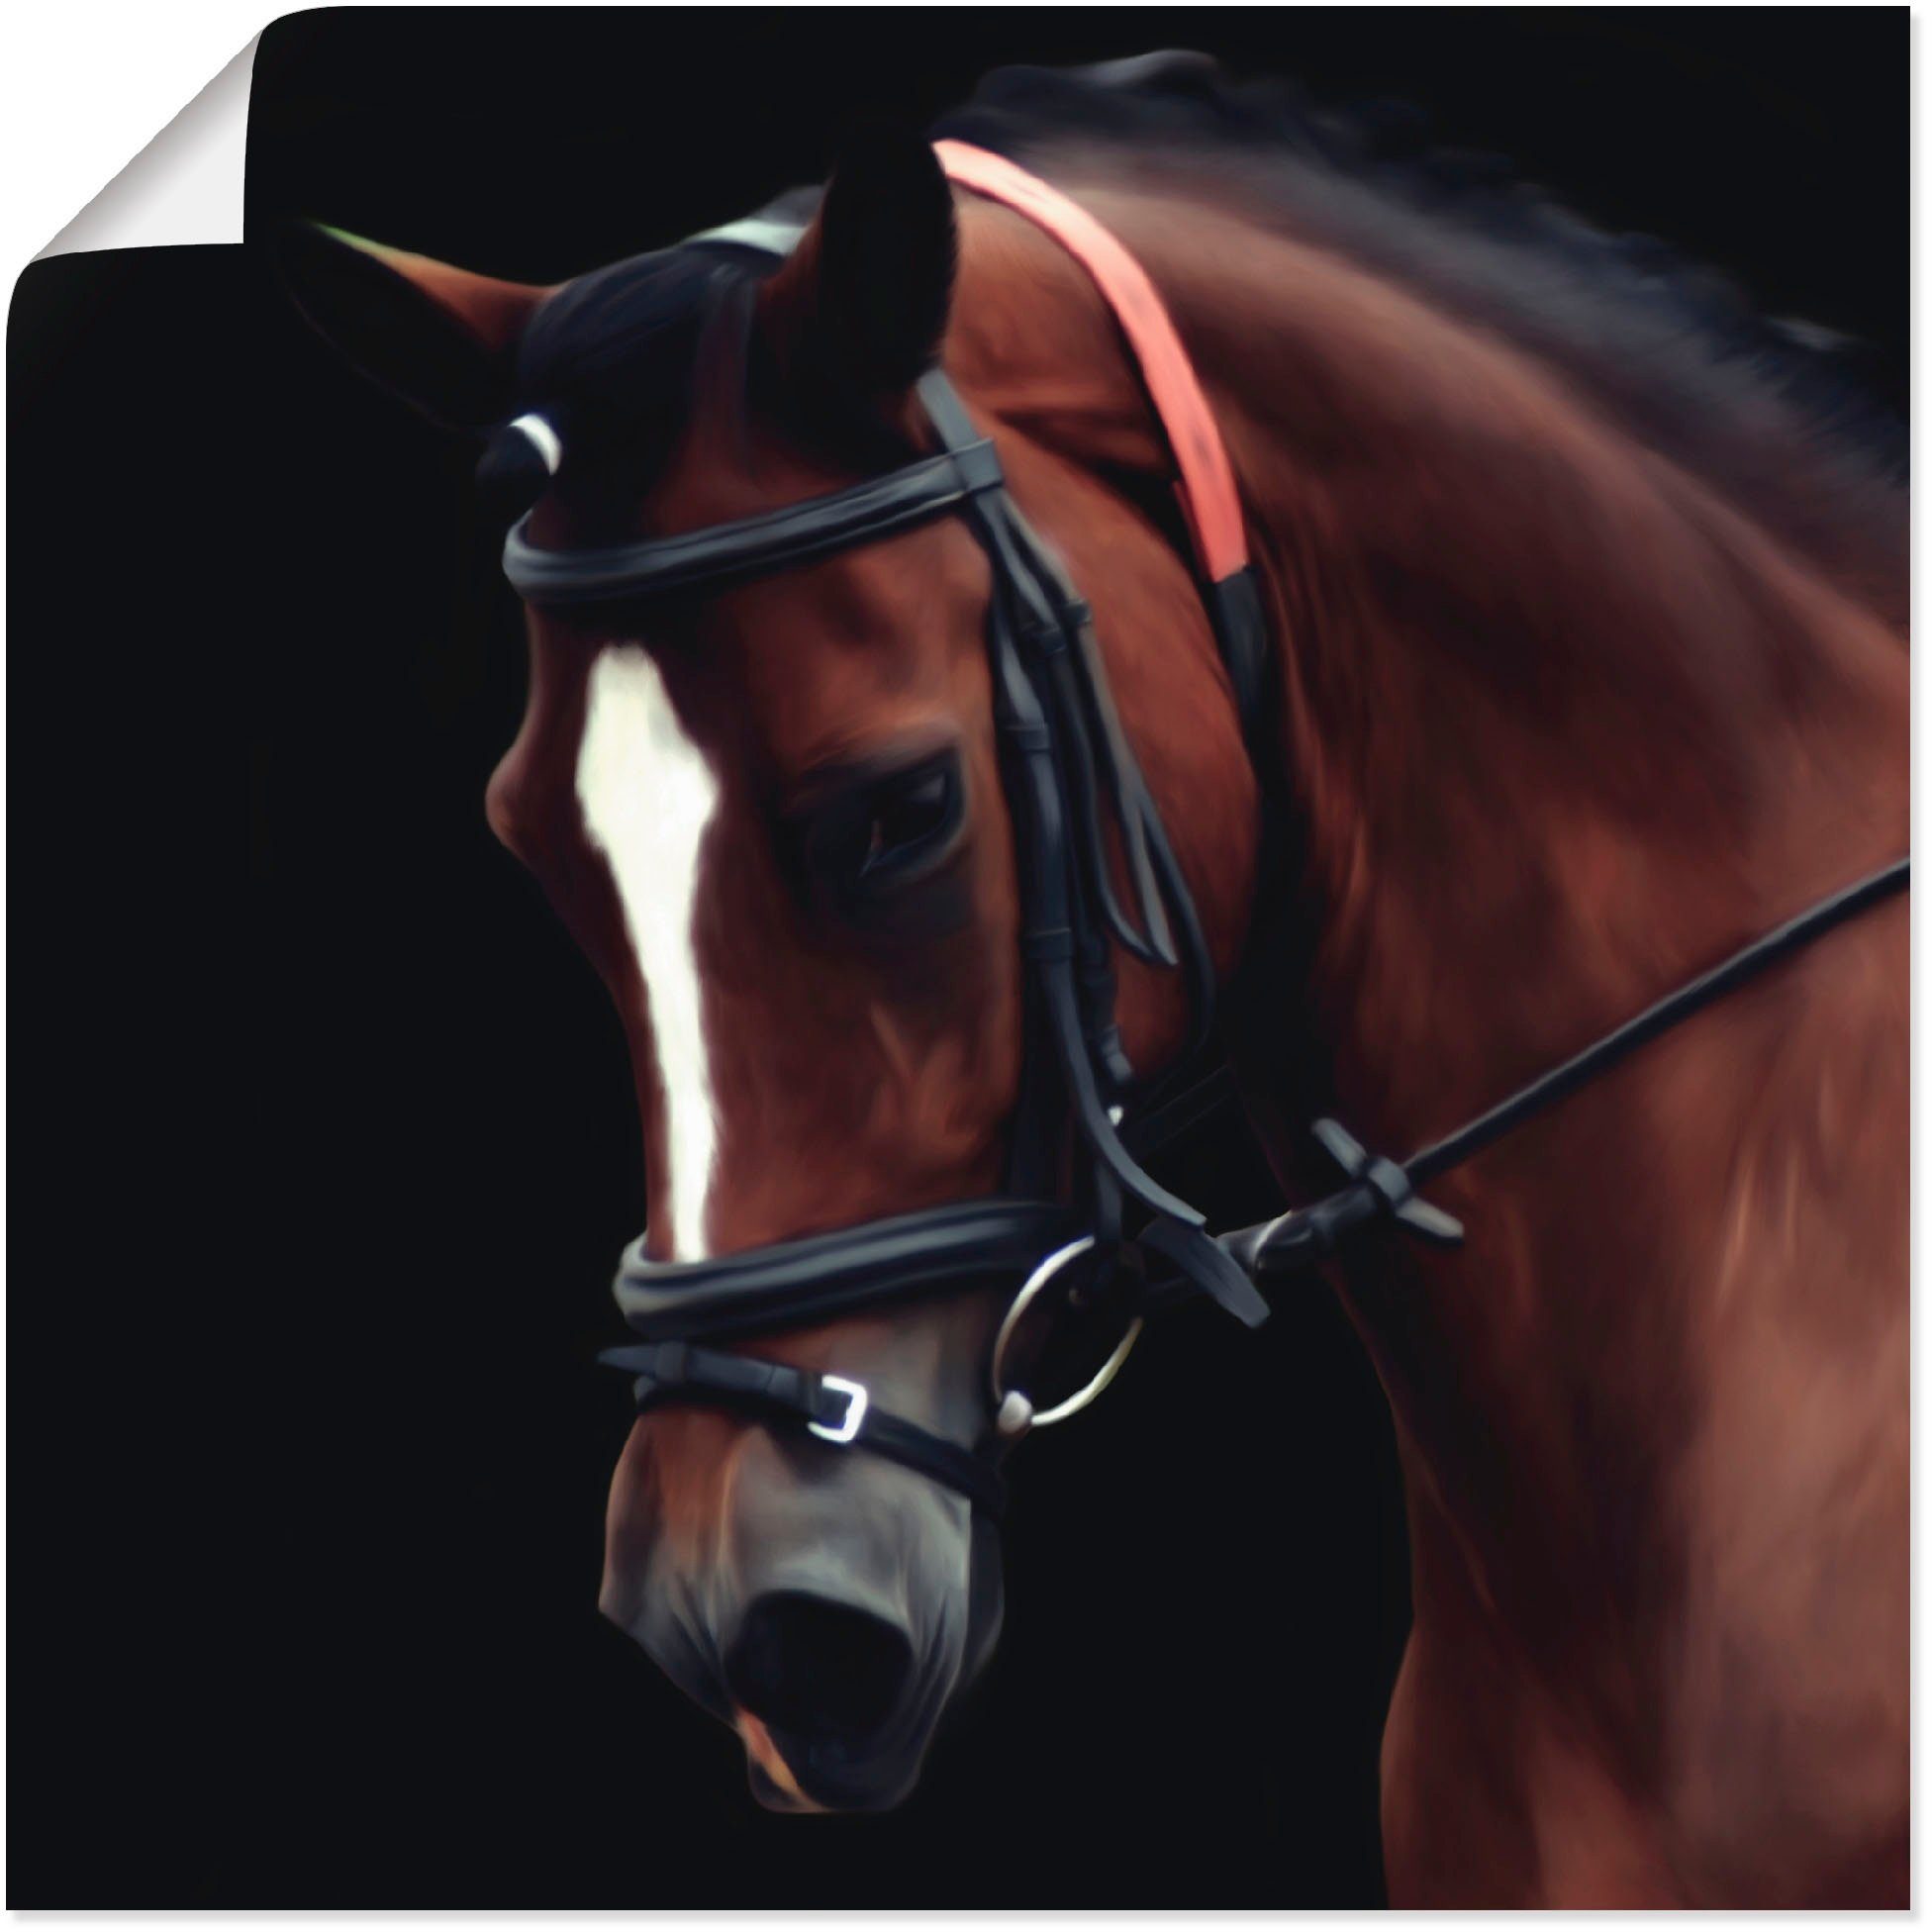 Artland Artprint Dressuur paard in vele afmetingen & productsoorten -artprint op linnen, poster, muursticker / wandfolie ook geschikt voor de badkamer (1 stuk)